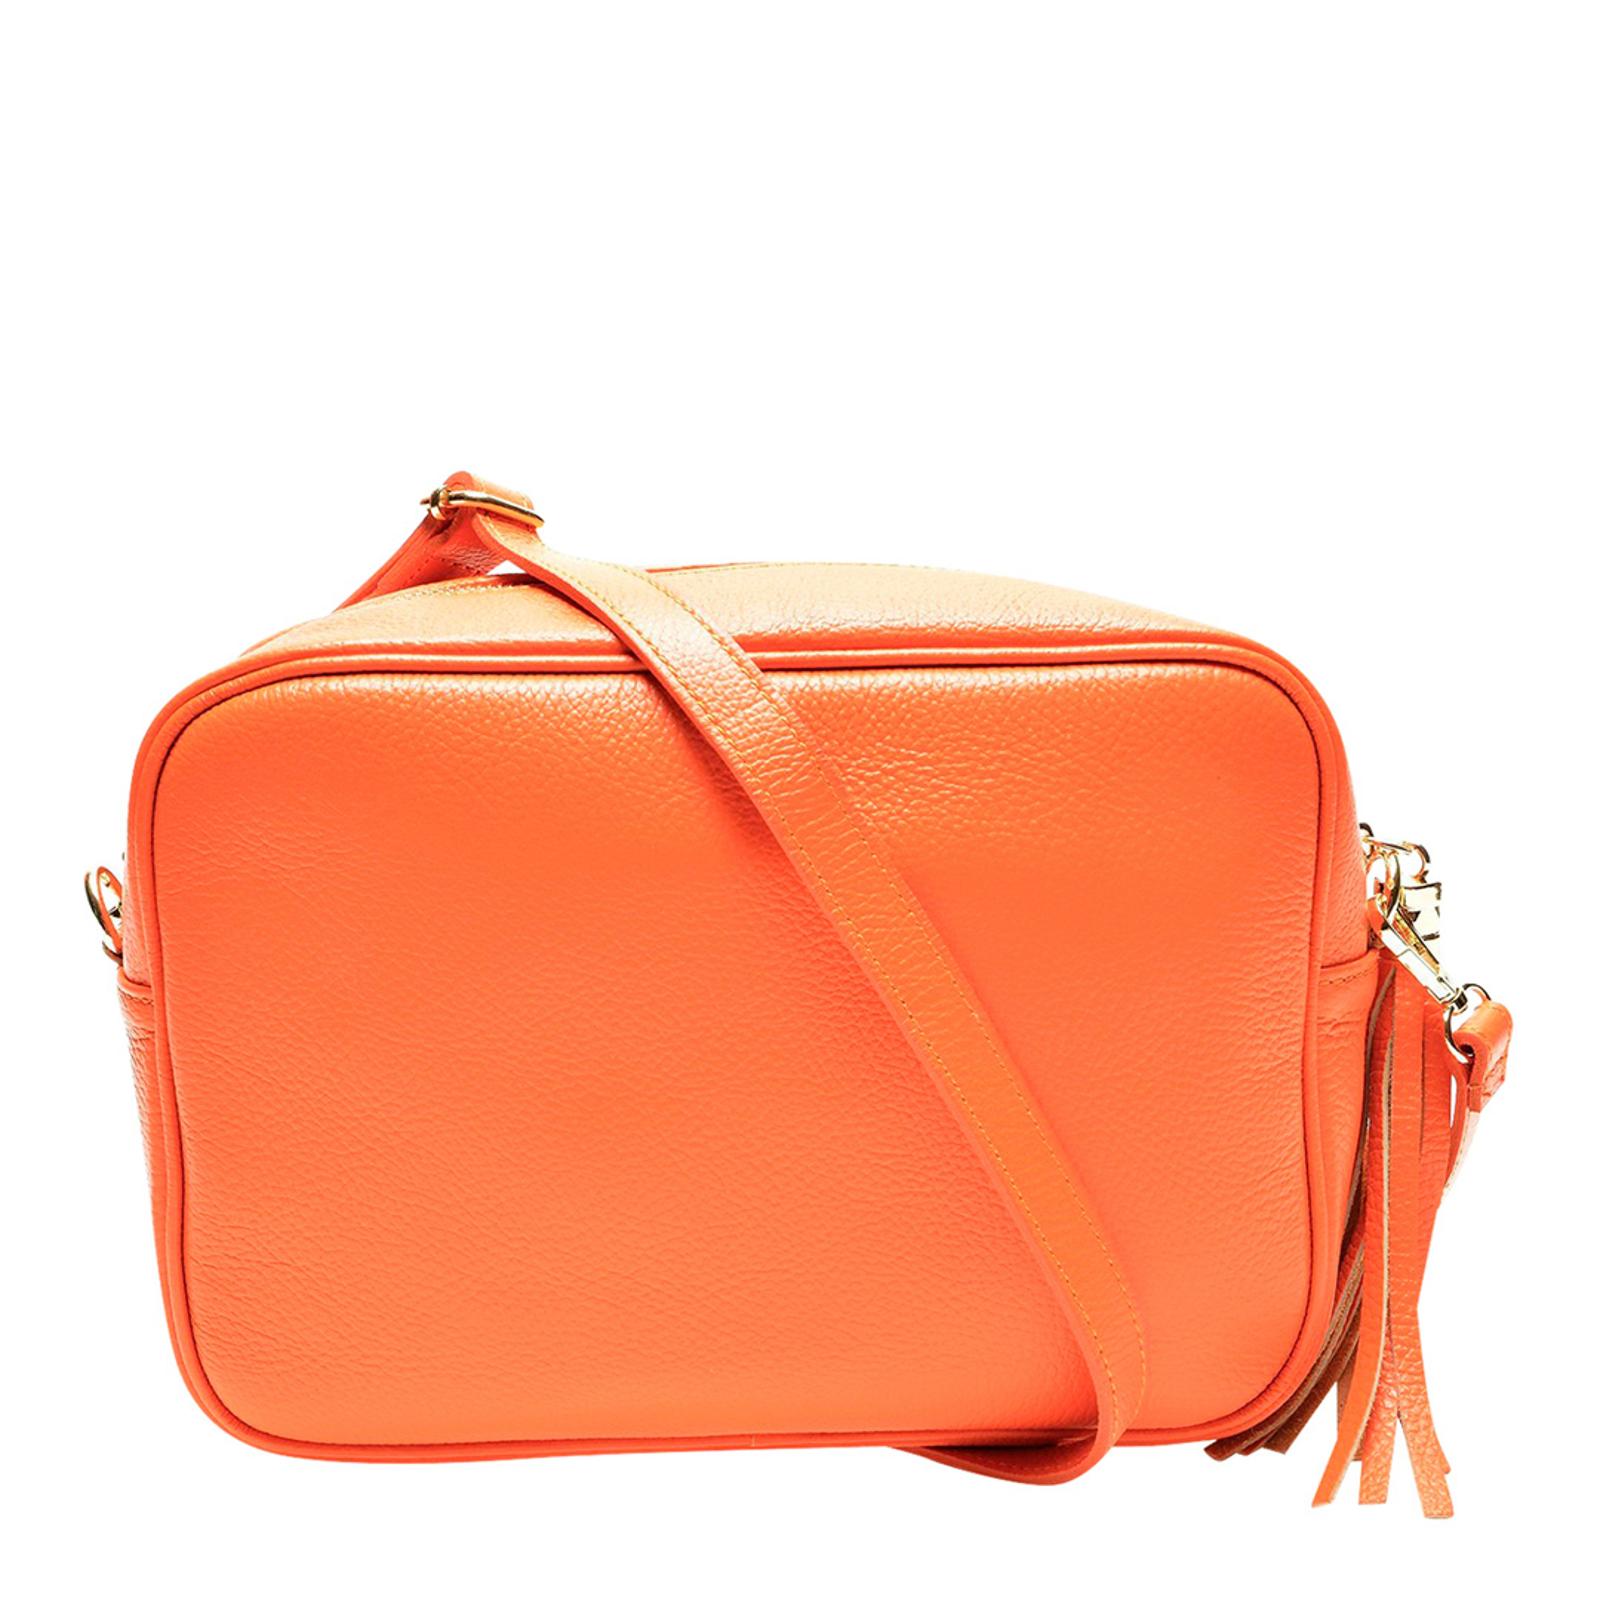 Orange Italian Leather Shoulder Bag - BrandAlley